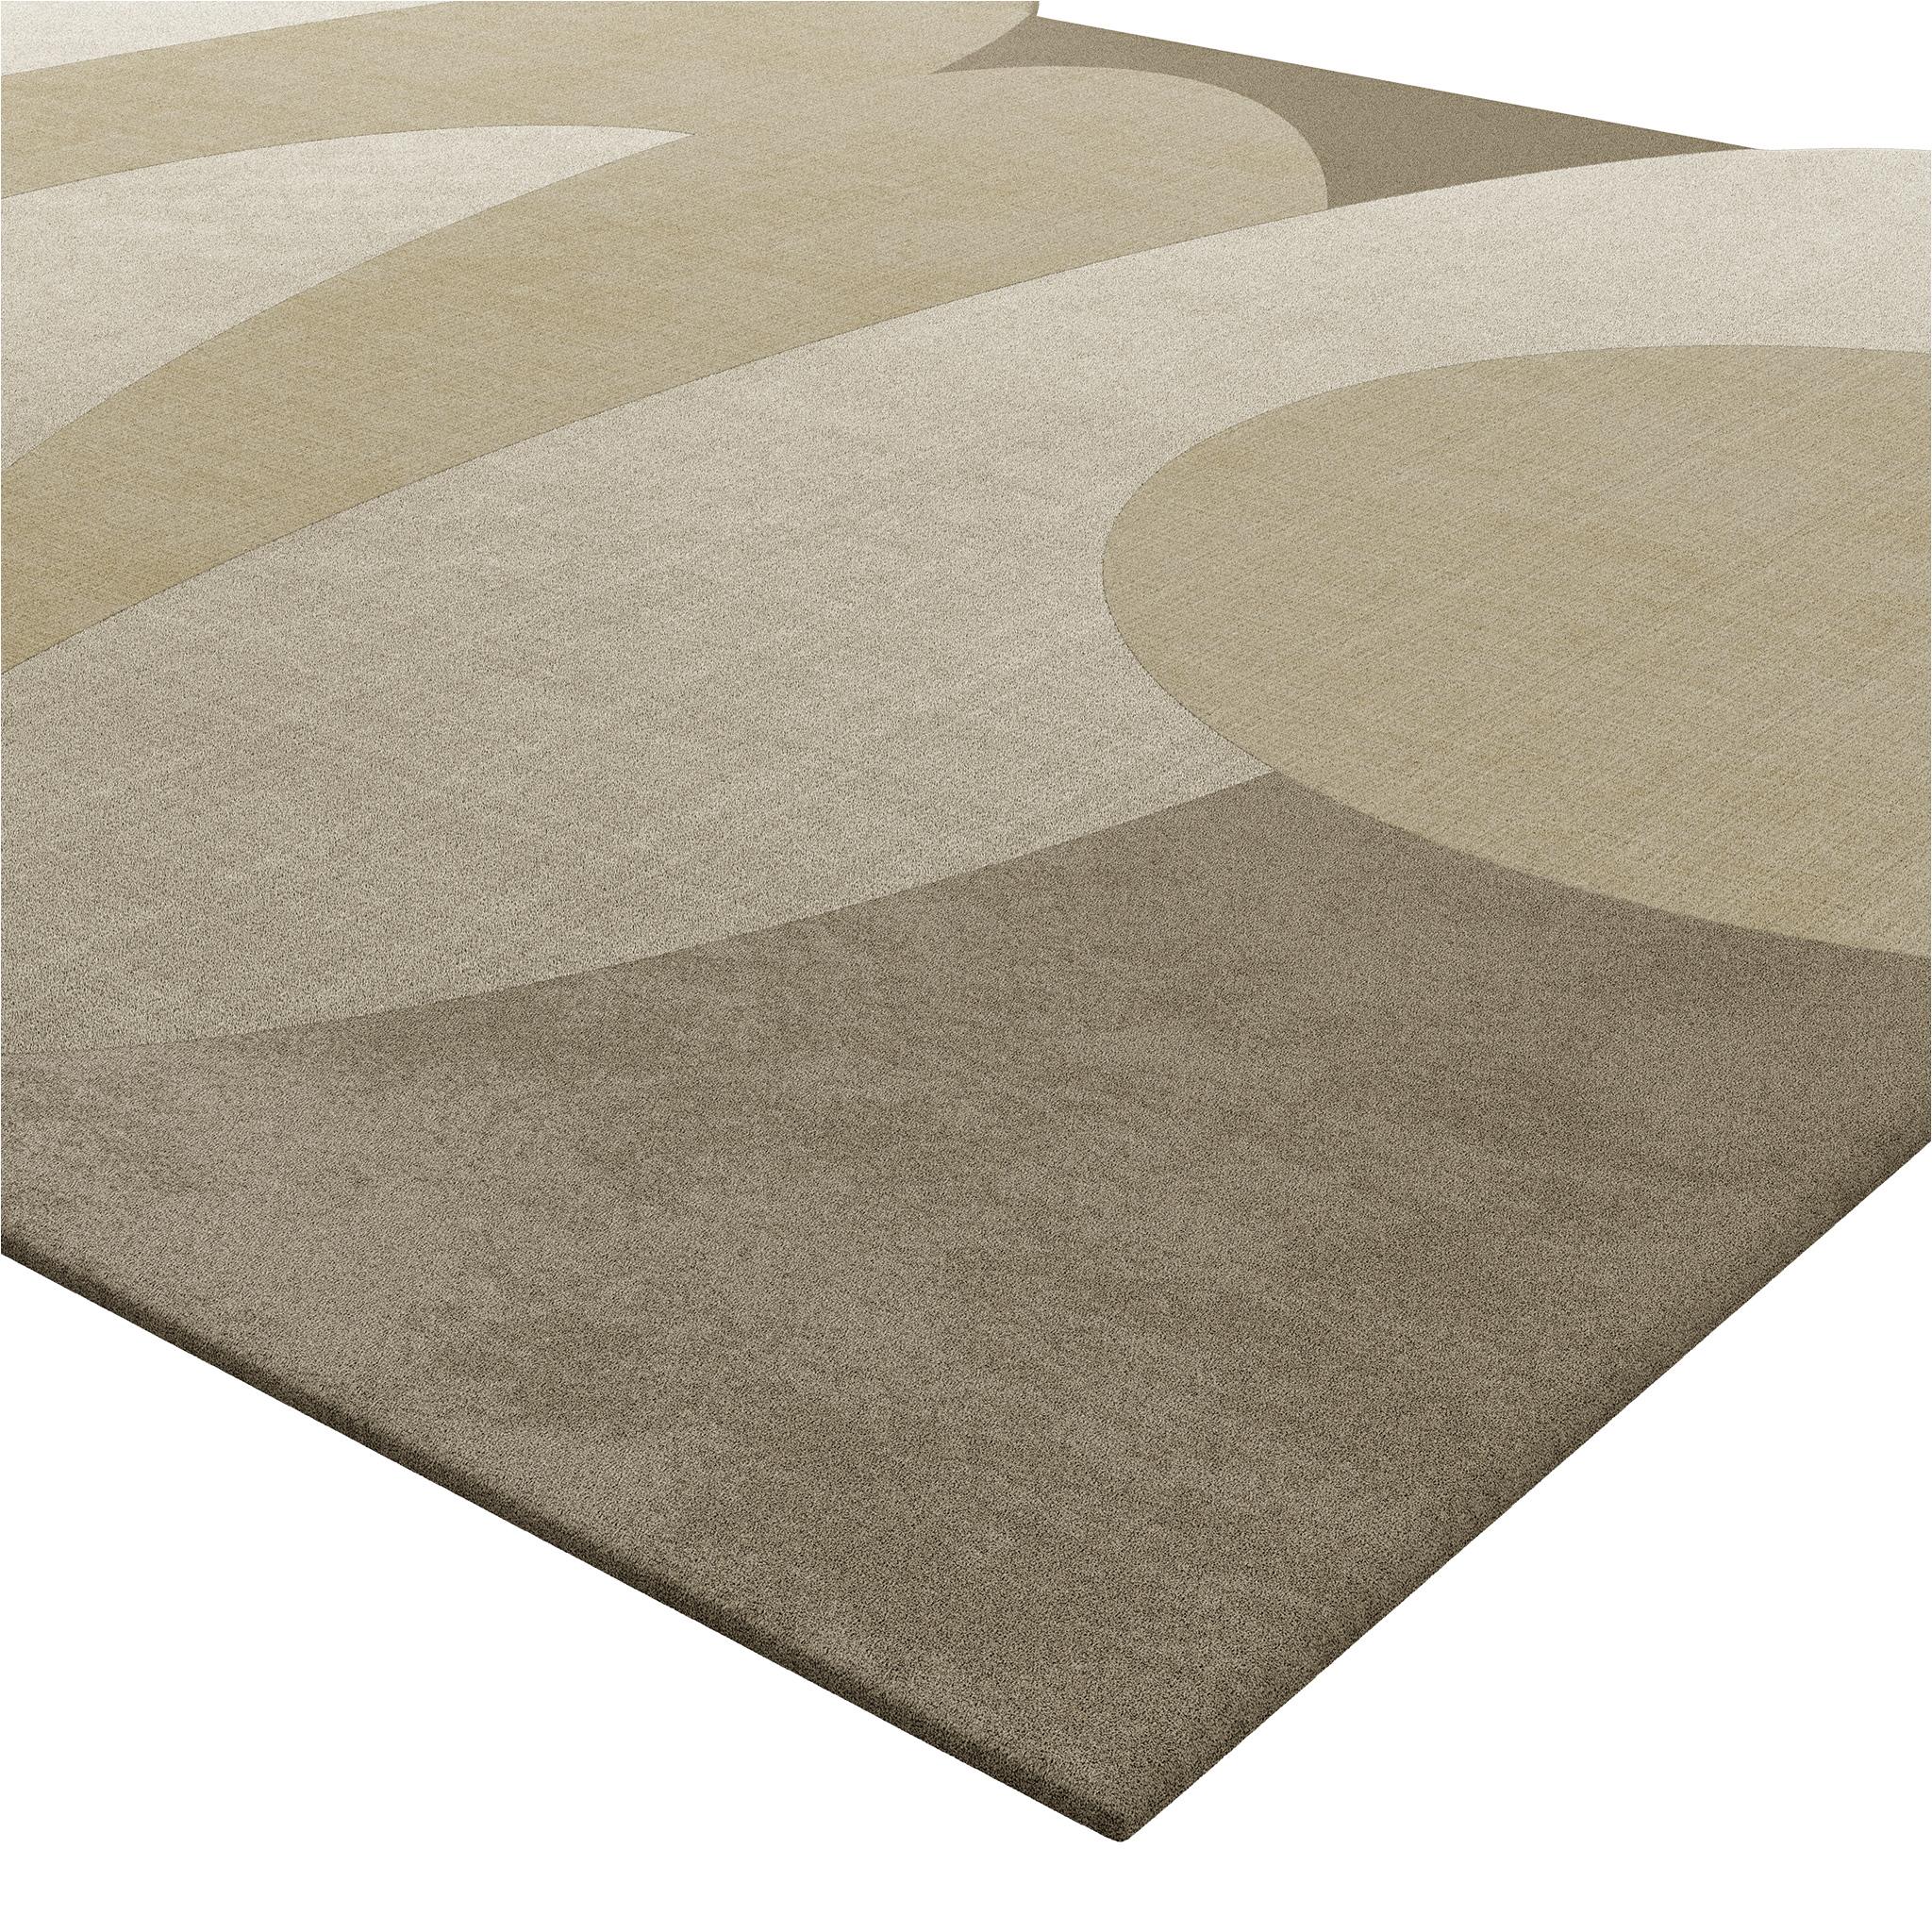 Minimalistischer Teppich in einer neutralen Farbe, zeitgenössisch, geeignet für jede moderne Einrichtung.
Er wird aus Lyocell hergestellt, kann aber auch aus Wolle oder Viskose gefertigt werden und ist in Farbe und Größe vollständig anpassbar.

Mit